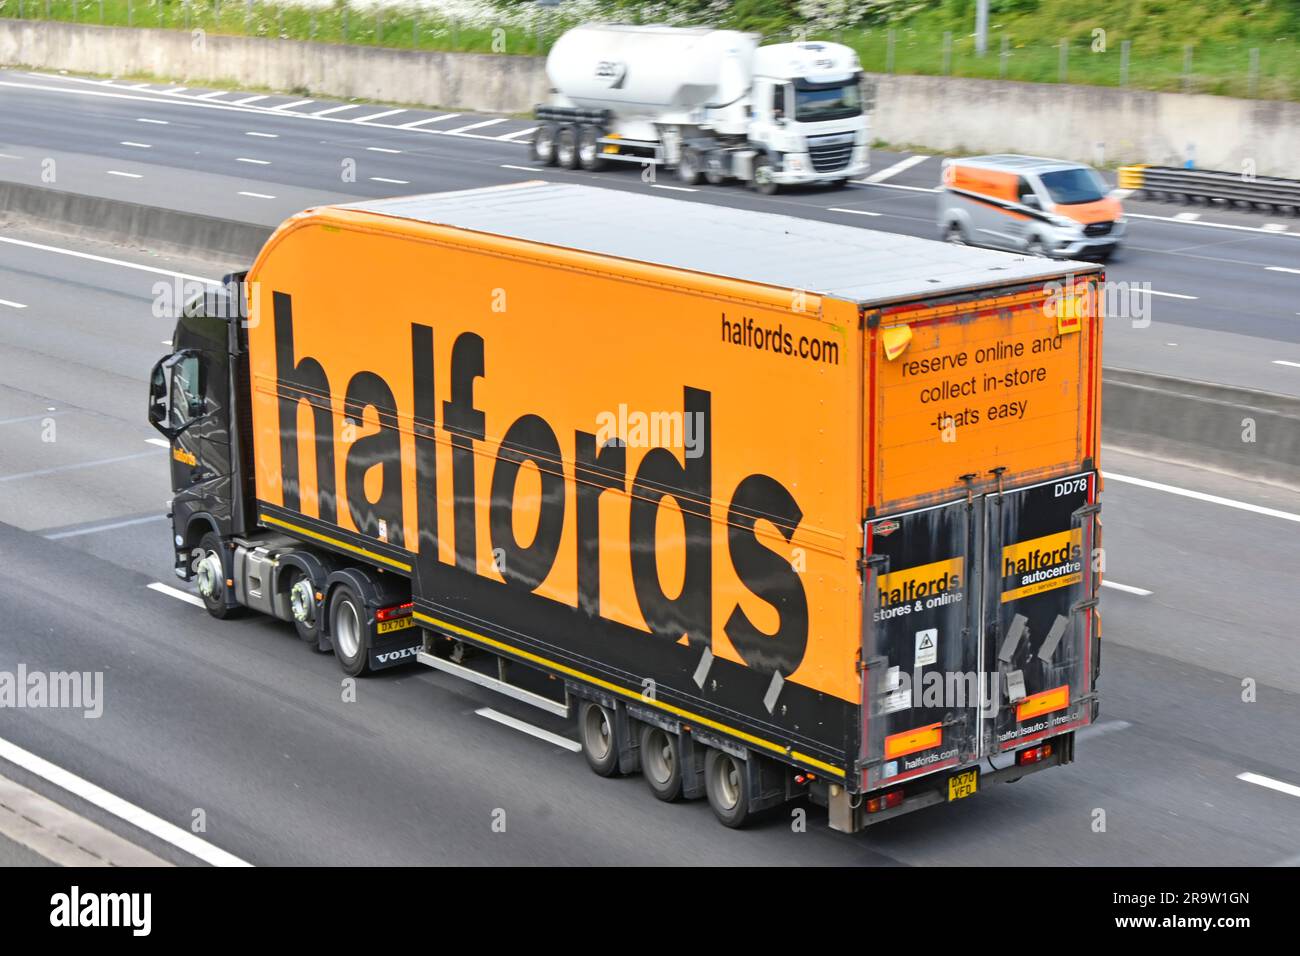 Halfords retail business nero Volvo prime Mover autocarro per il traino di autocarri pesanti con cassone rigido semirimorchio articolato pannello pubblicitario arancione per autostradale del Regno Unito Foto Stock